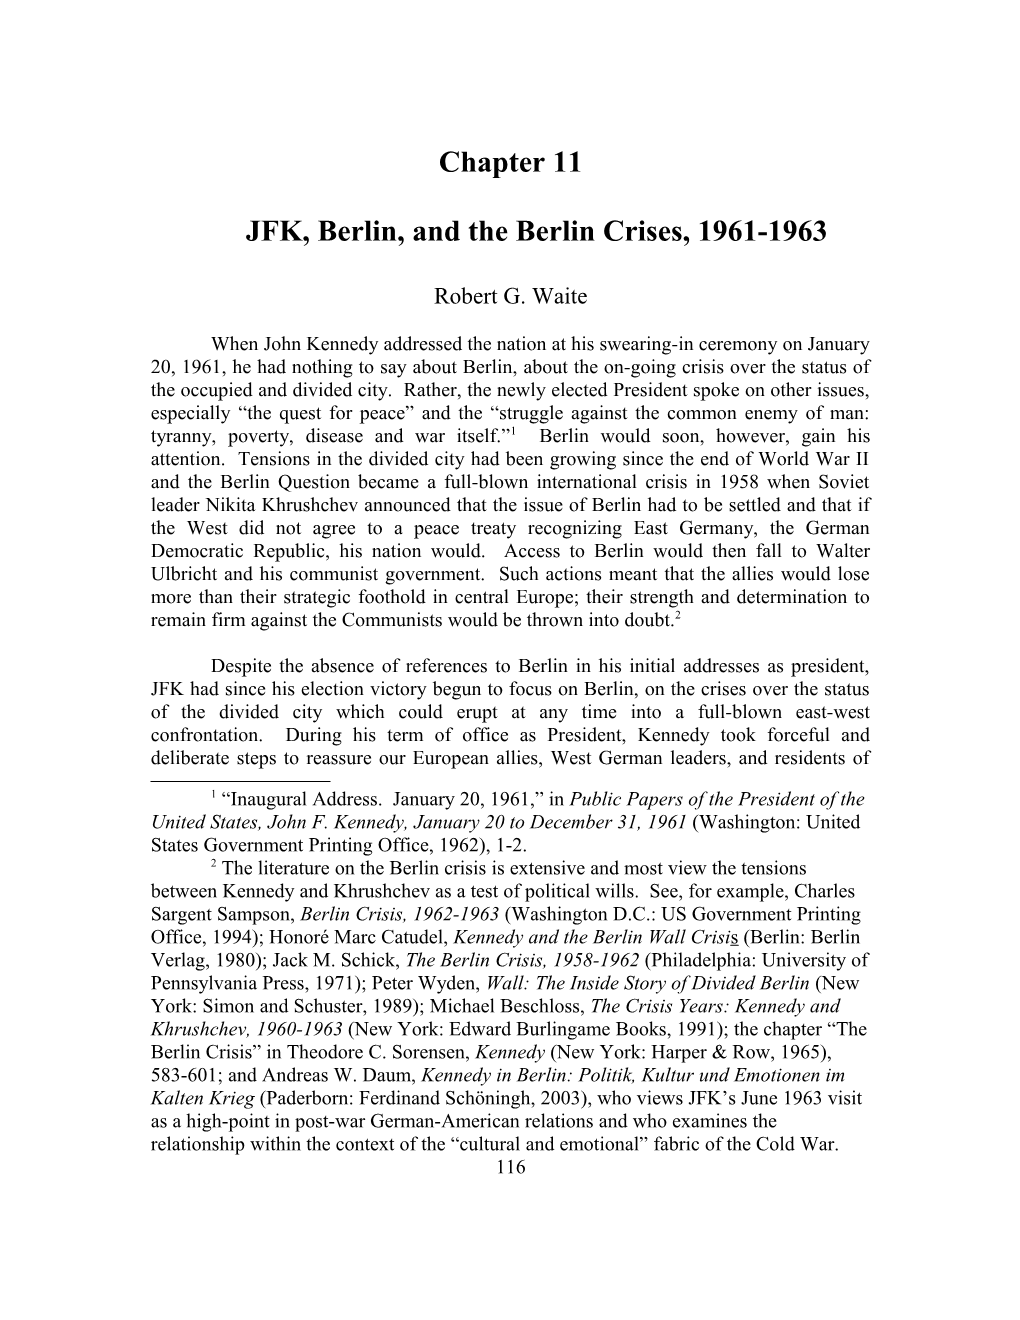 JFK, Berlin, and the Berlin Crises, 1961-1963